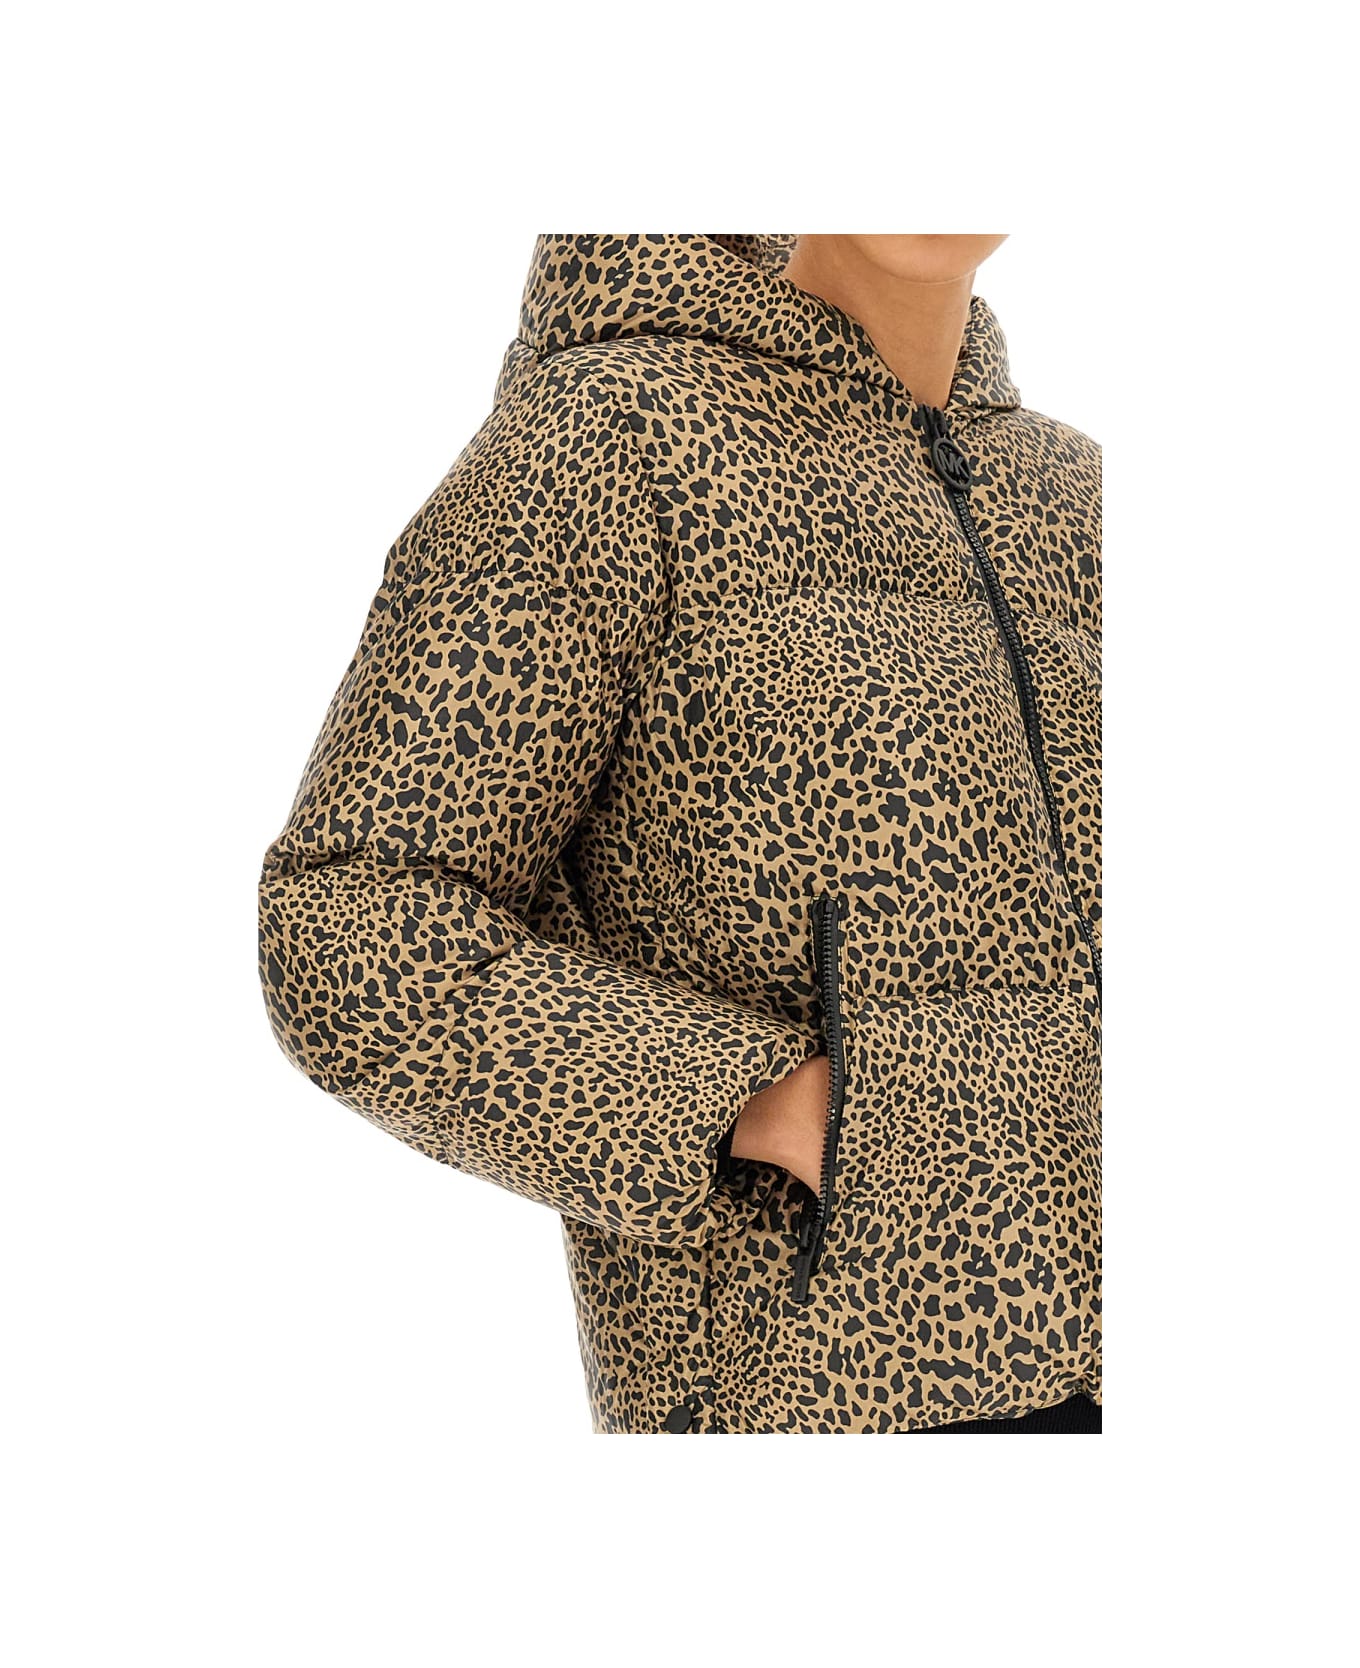 Michael Kors Down Jacket With Animal Print - BROWN